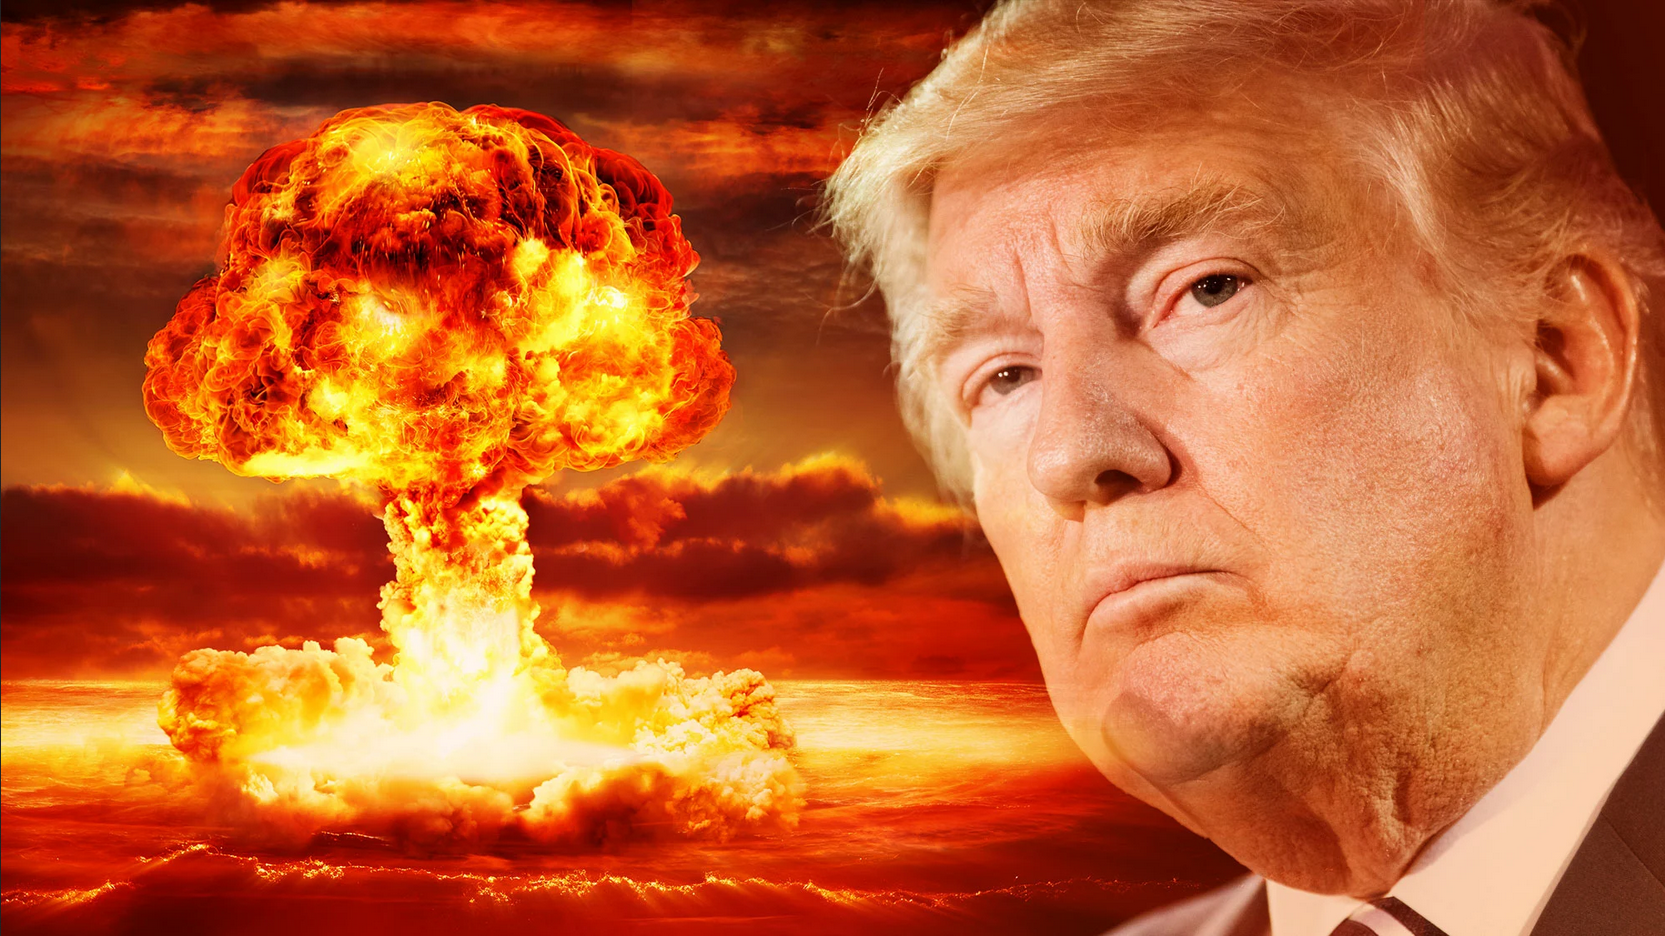 Trump, avertisment de război nuclear în Ucraina: ÎNTÂI vin tancurile, apoi RACHETELE NUCLEARE. Puneți capăt acest război dement ACUM! Fostul președinte cere oprirea ajutorului militar al SUA